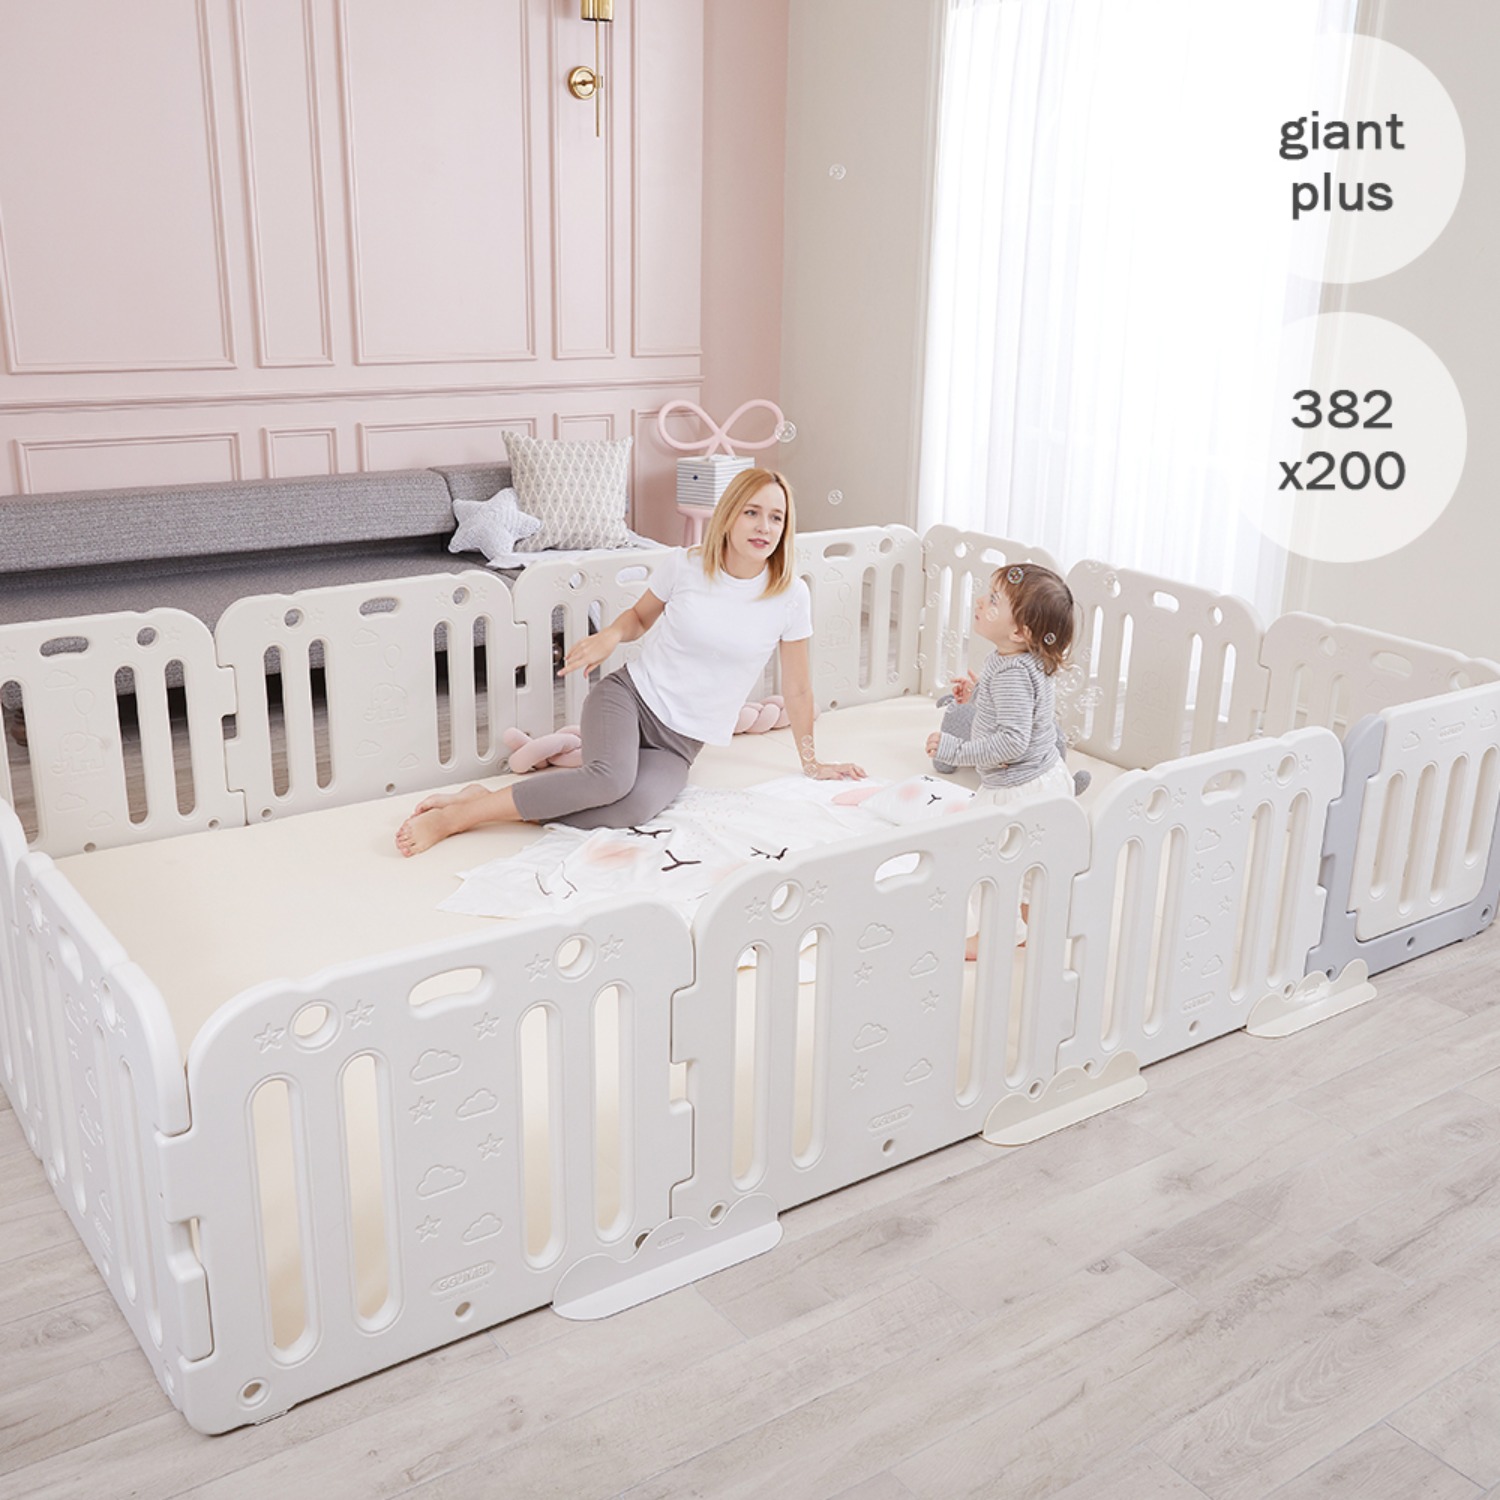 giant plus baby room set 382 x 200